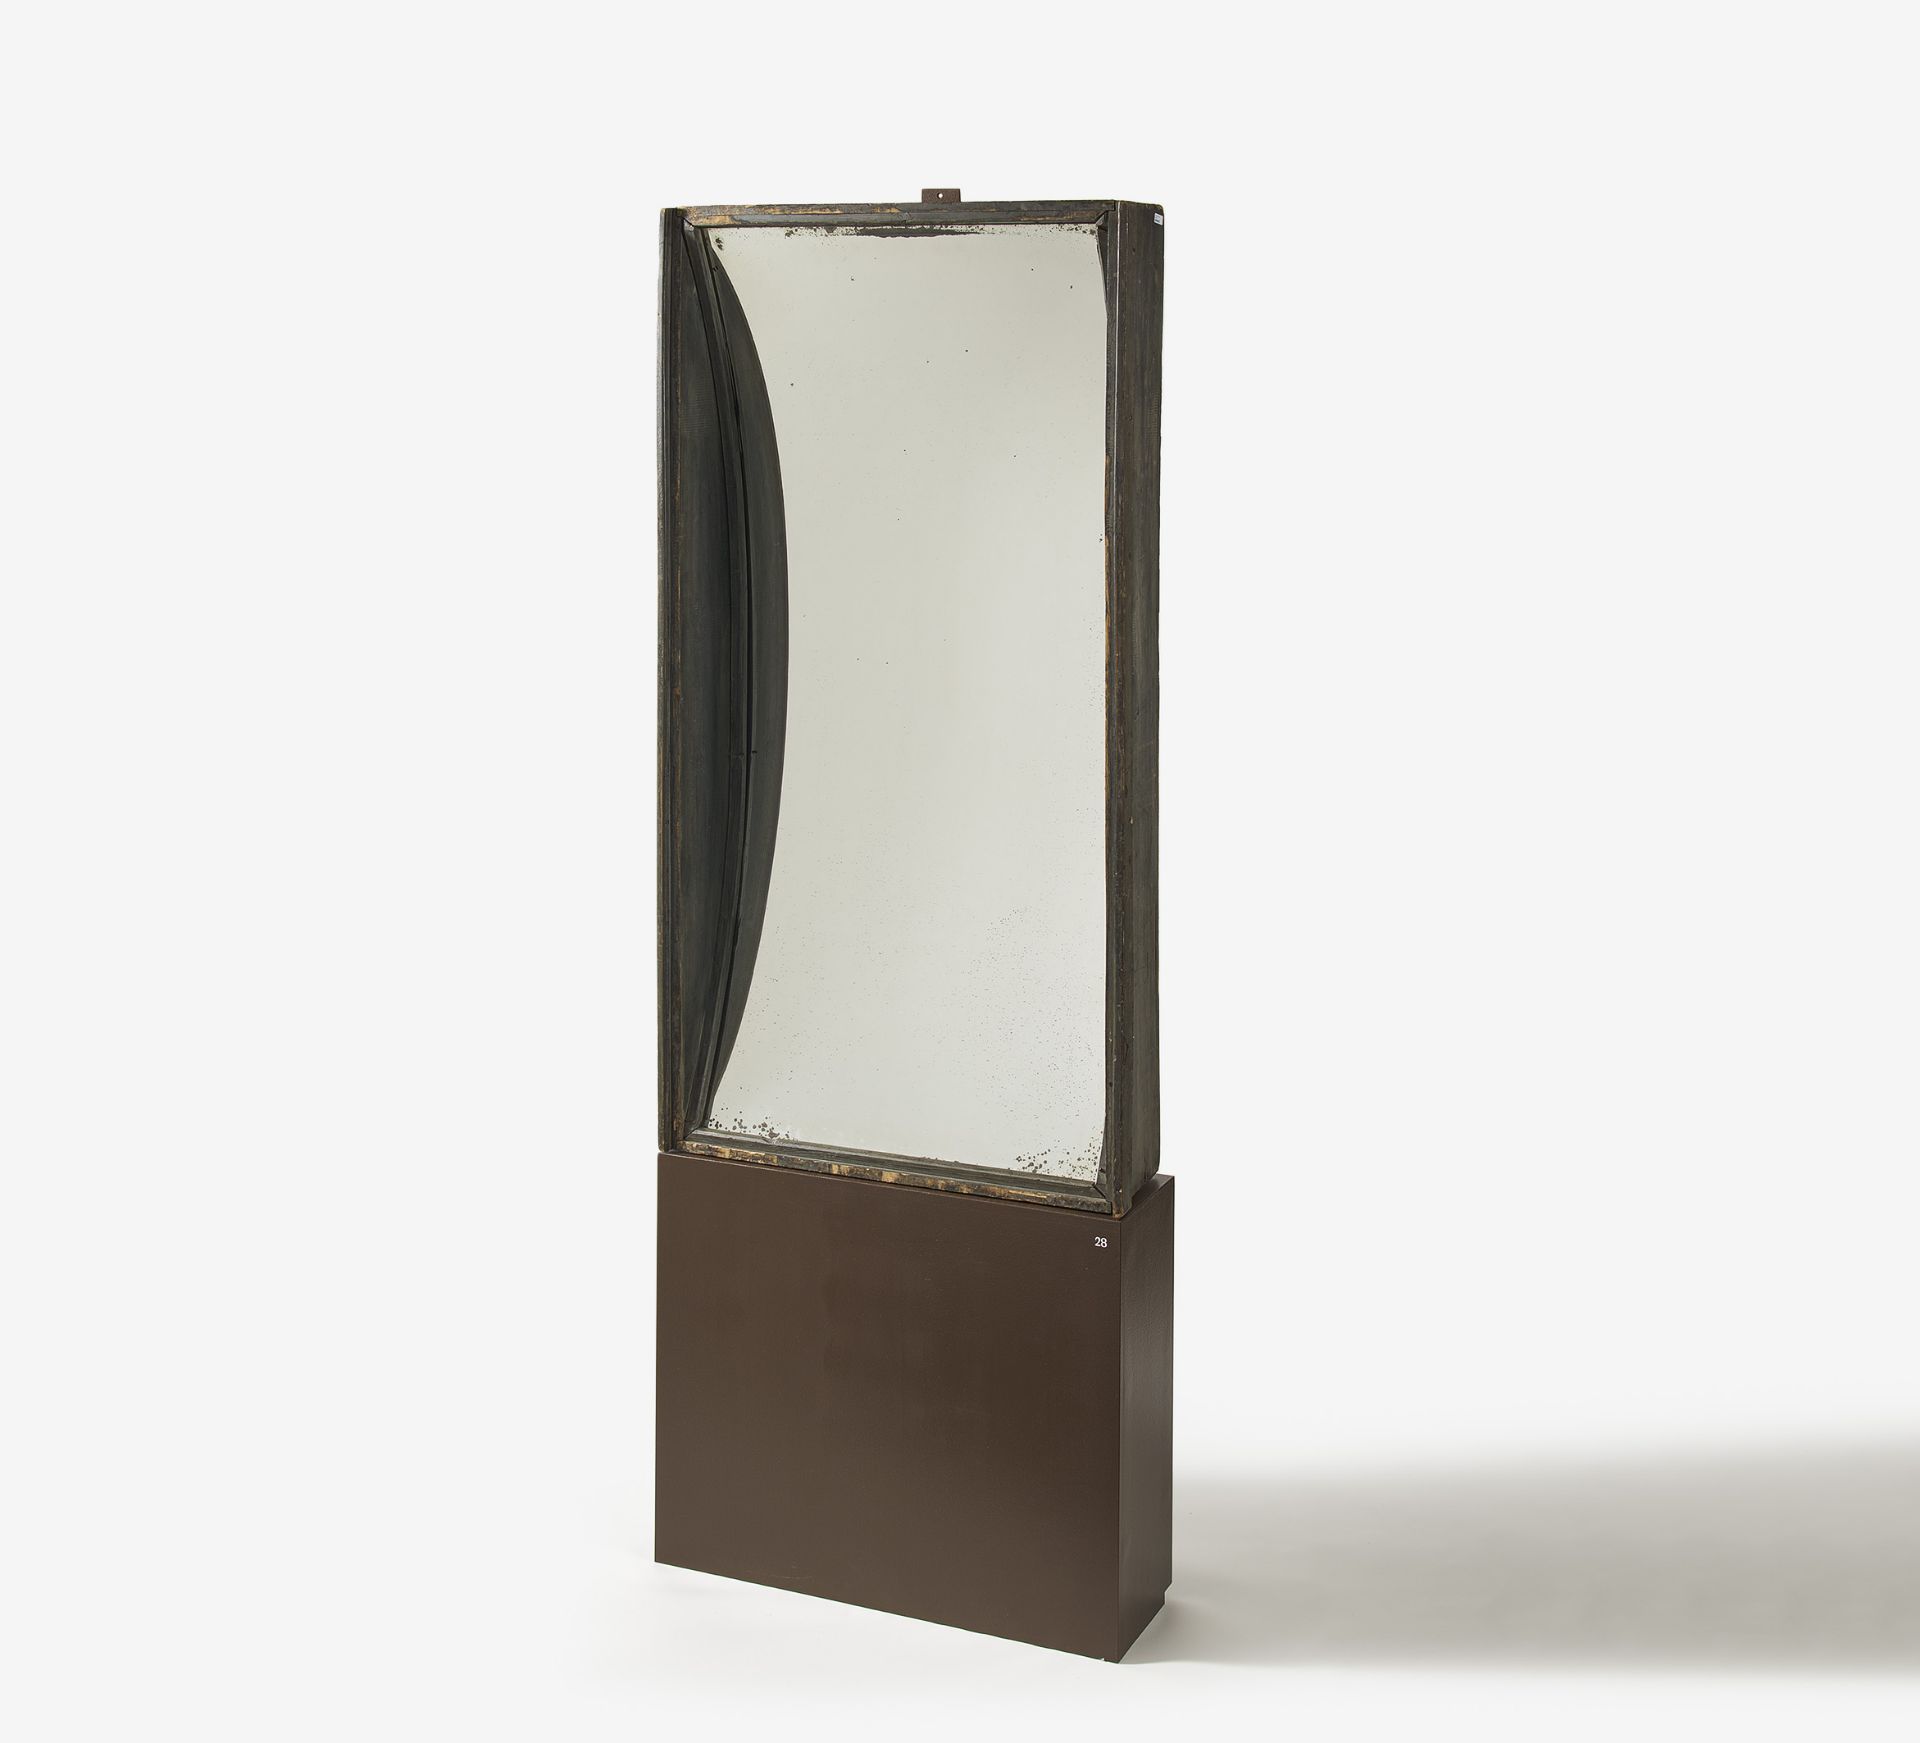 Titel: Rigolorium - Großer Zerrspiegel. Datierung: Frankreich. Um 1900. Spiegelglas. HolzrahmenMaße: